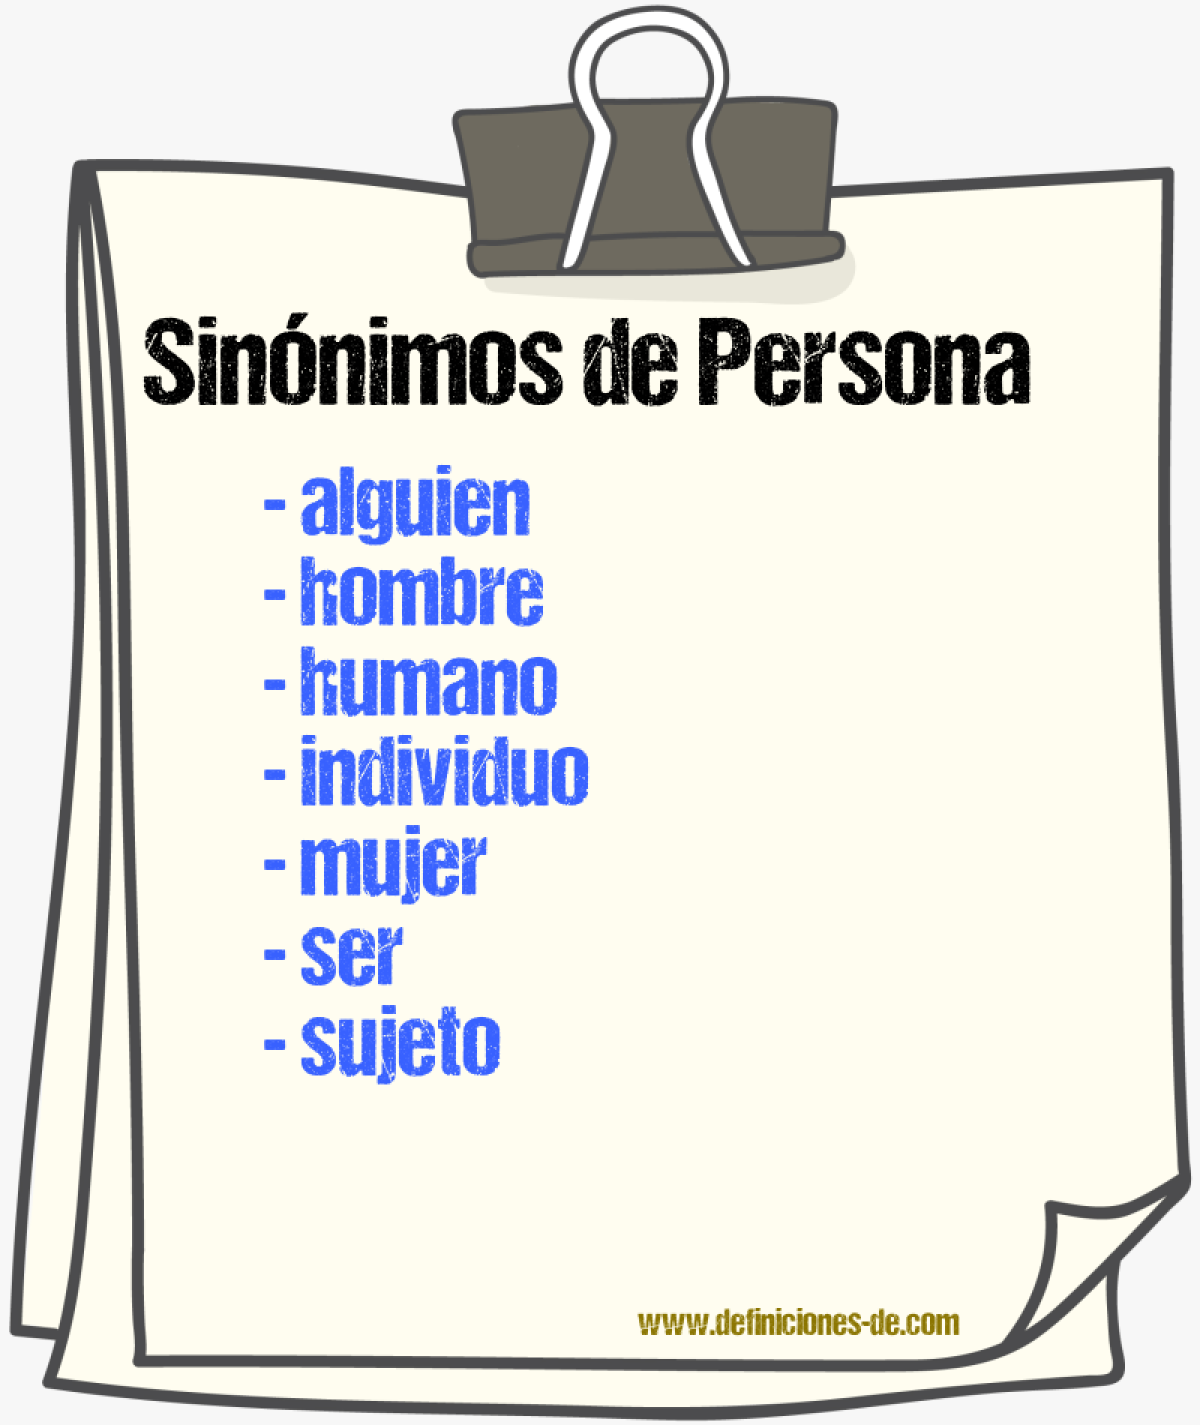 Sinónimos de persona